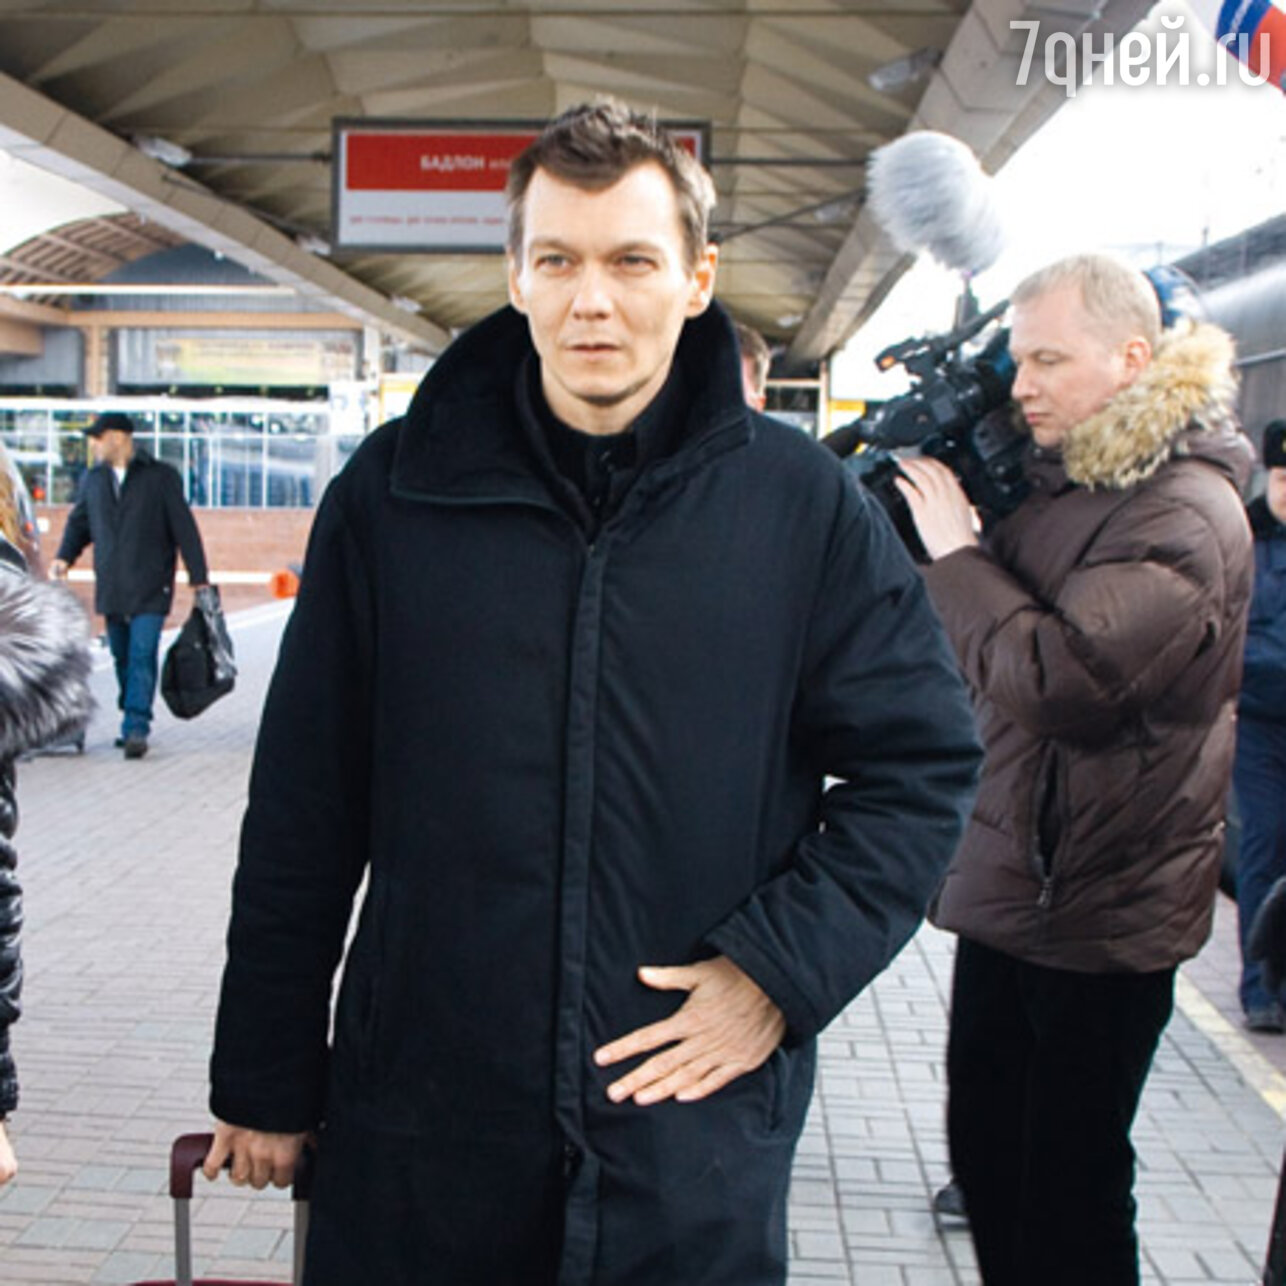 Филипп уезжает на съемки в Северную столицу с Ленинградского вокзала 